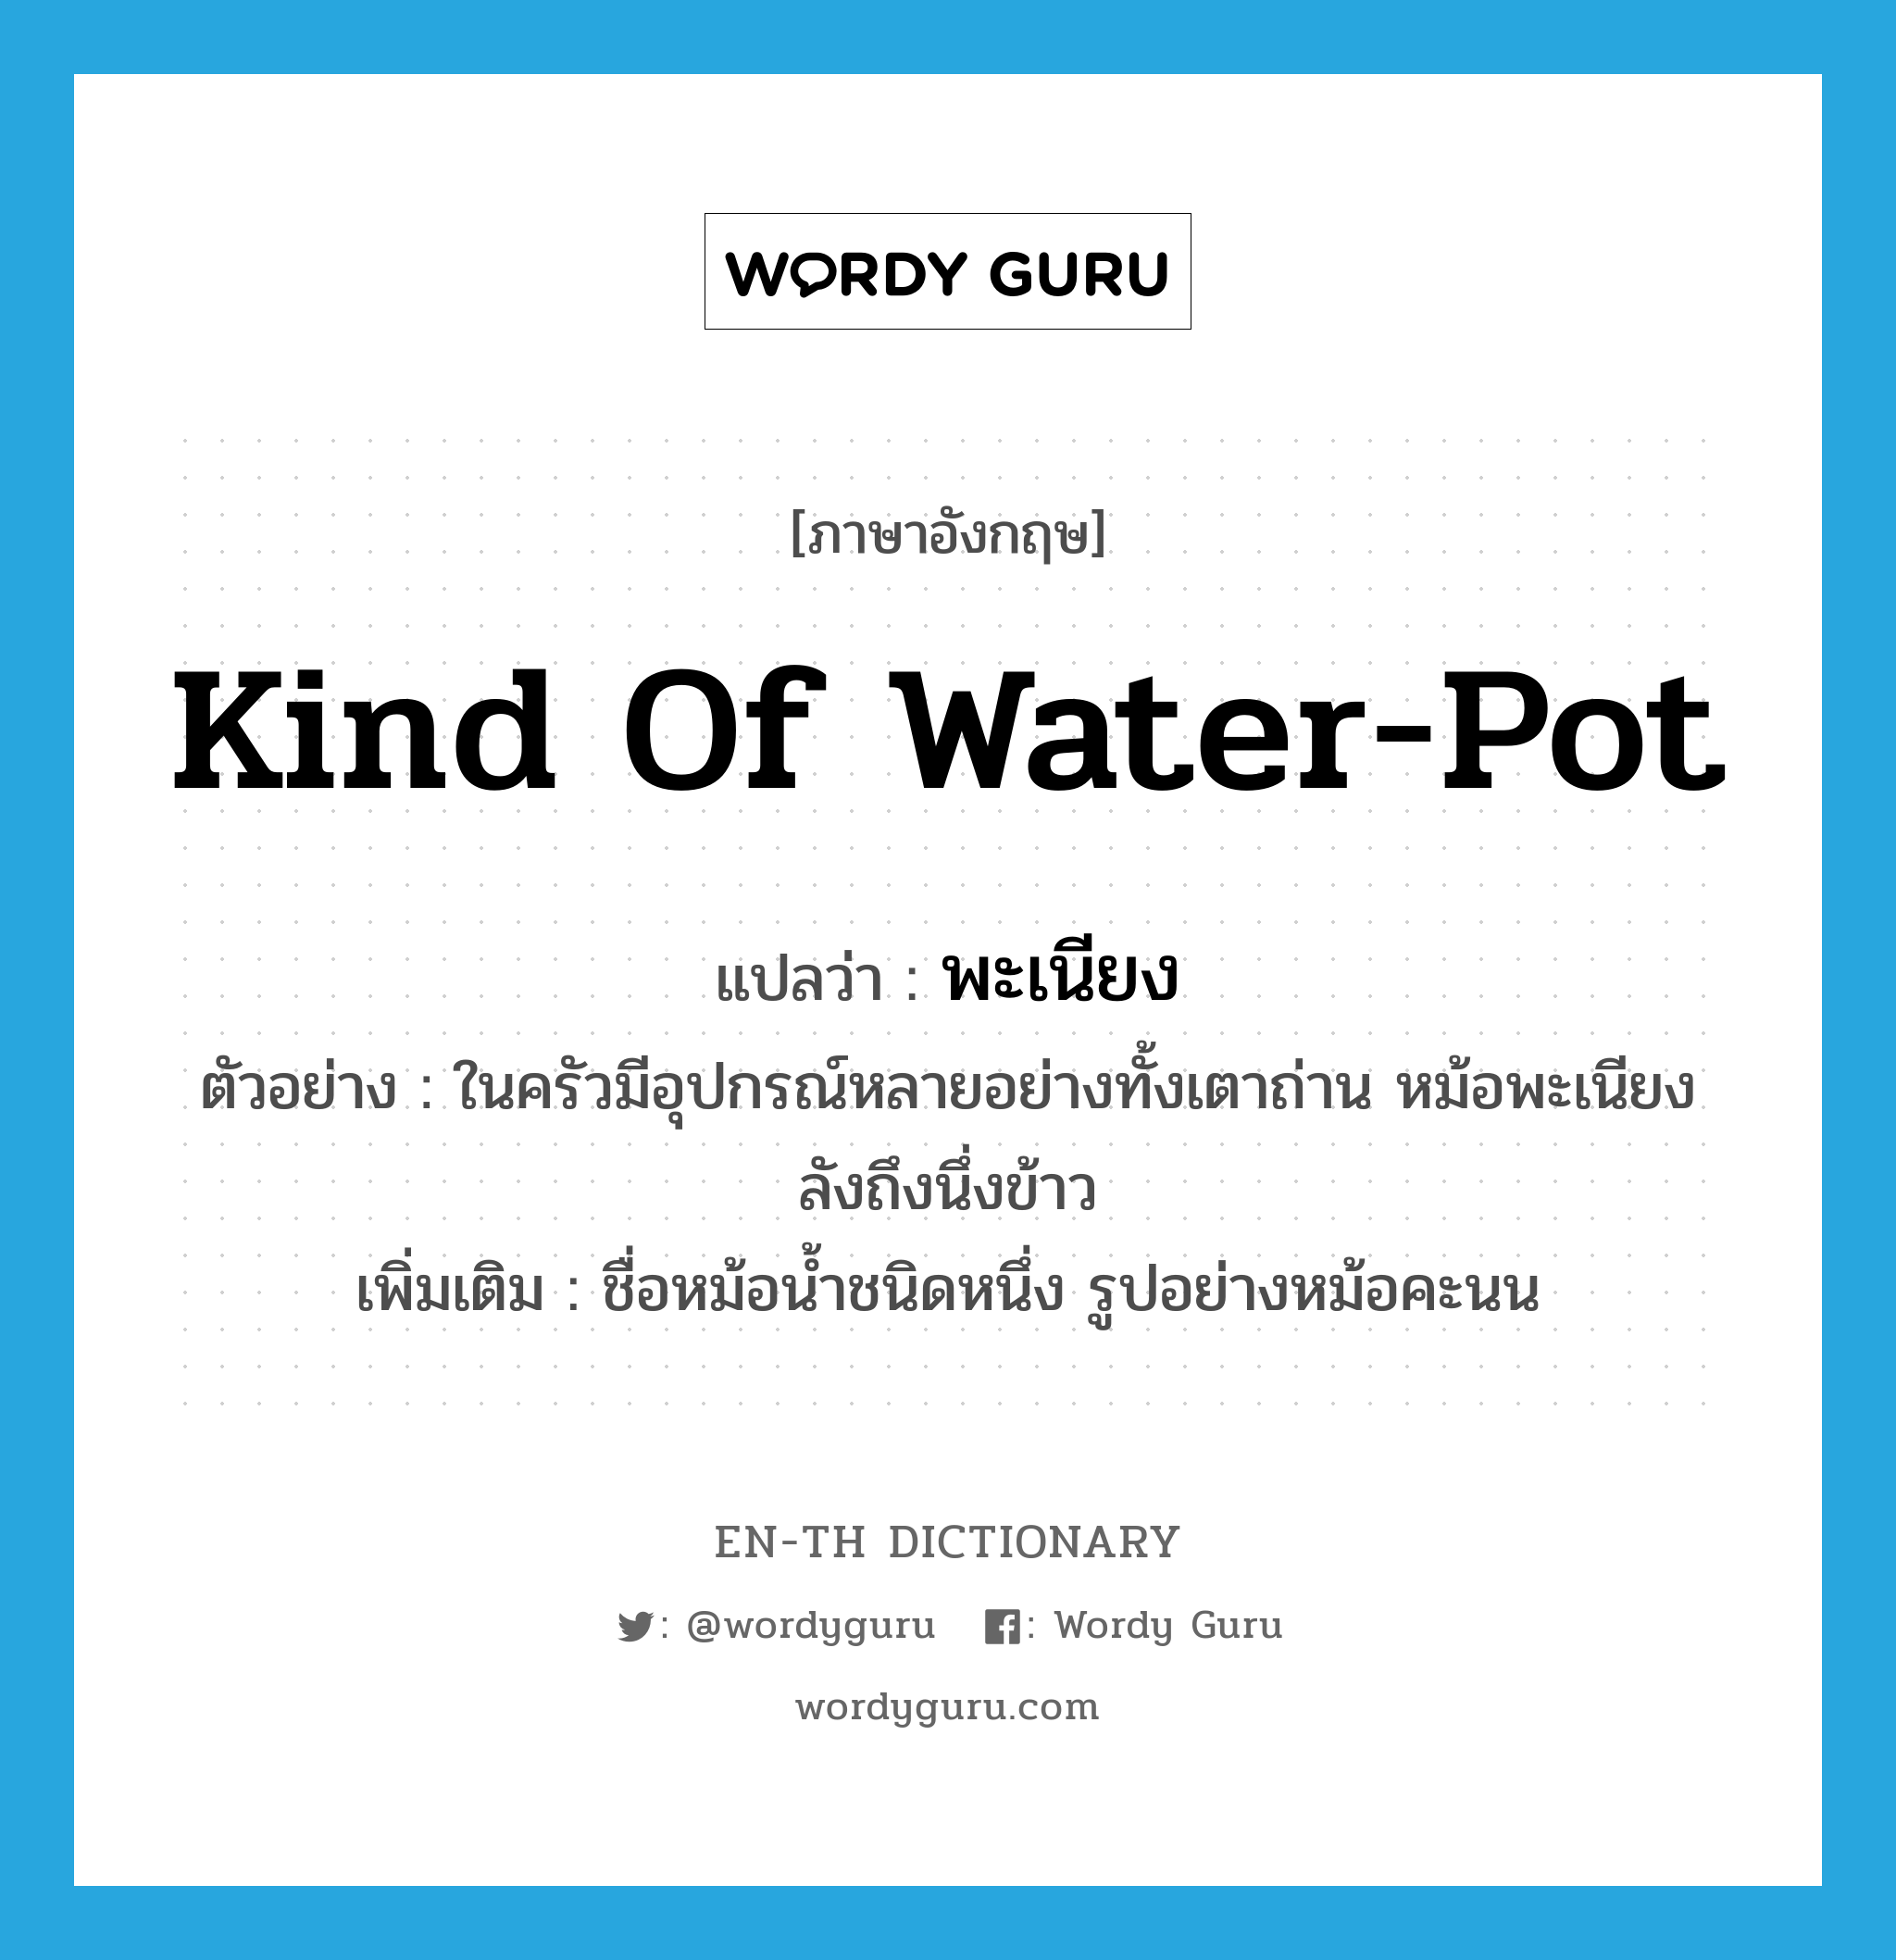 kind of water-pot แปลว่า?, คำศัพท์ภาษาอังกฤษ kind of water-pot แปลว่า พะเนียง ประเภท N ตัวอย่าง ในครัวมีอุปกรณ์หลายอย่างทั้งเตาถ่าน หม้อพะเนียง ลังถึงนึ่งข้าว เพิ่มเติม ชื่อหม้อน้ำชนิดหนึ่ง รูปอย่างหม้อคะนน หมวด N